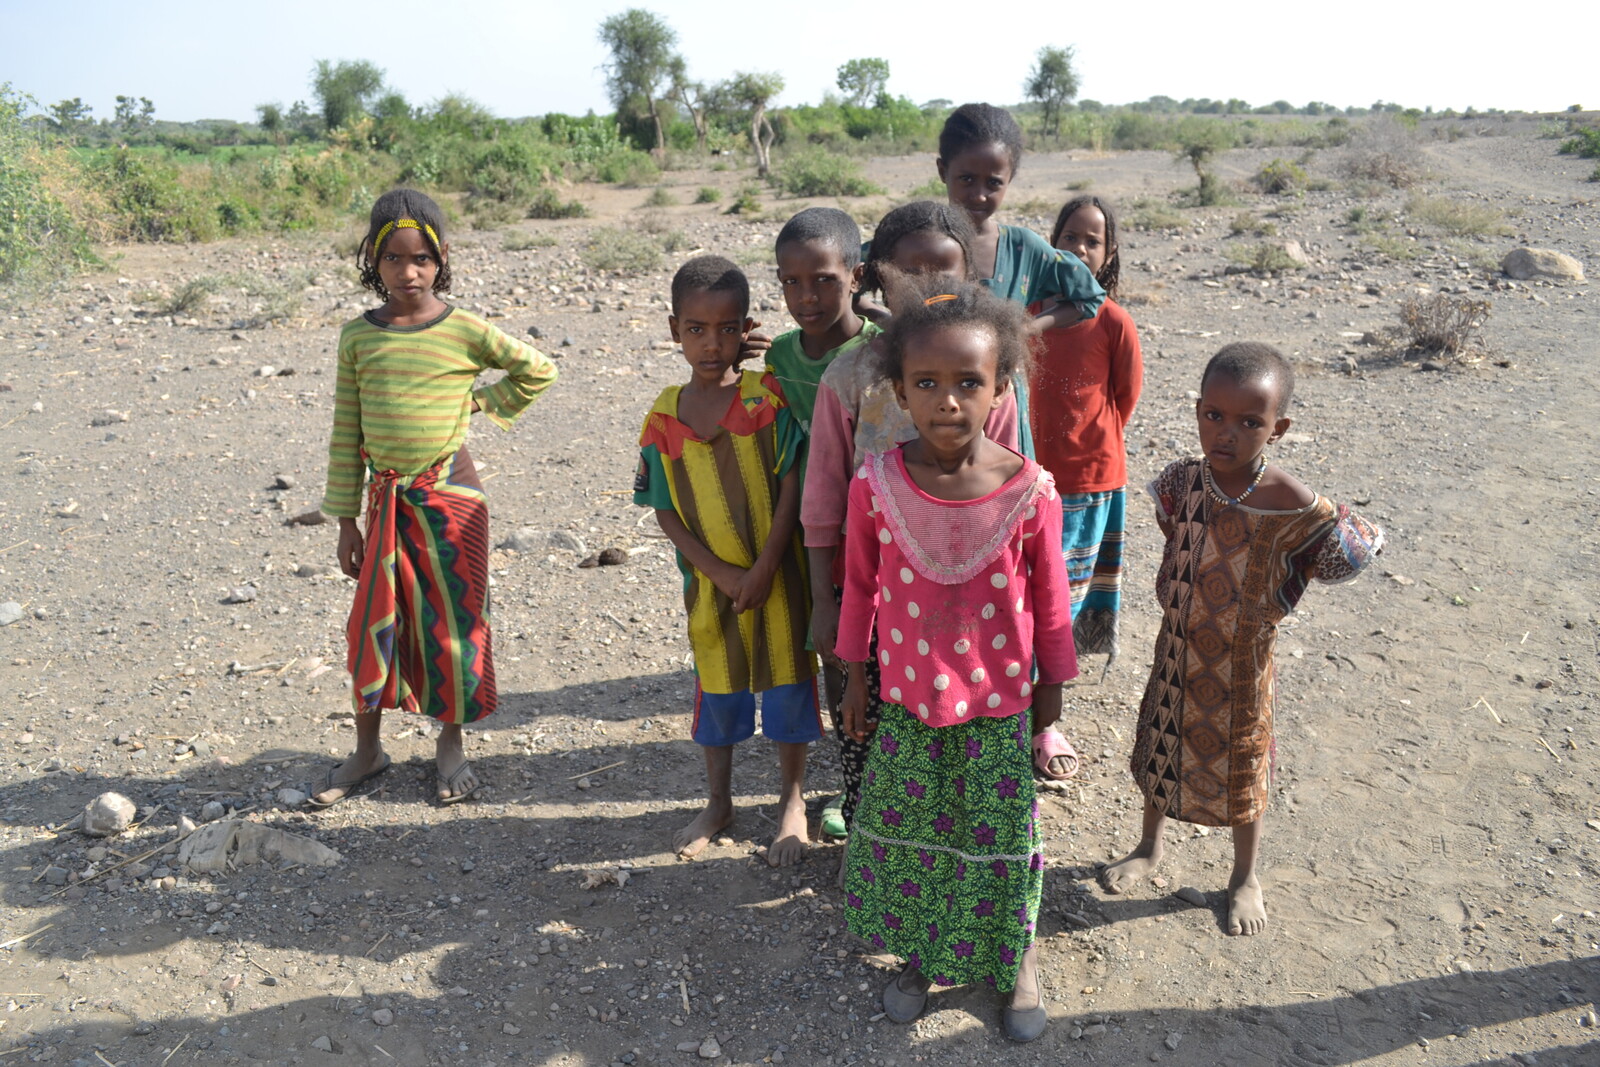 Viele Kinder in Äthiopien leiden Hunger.